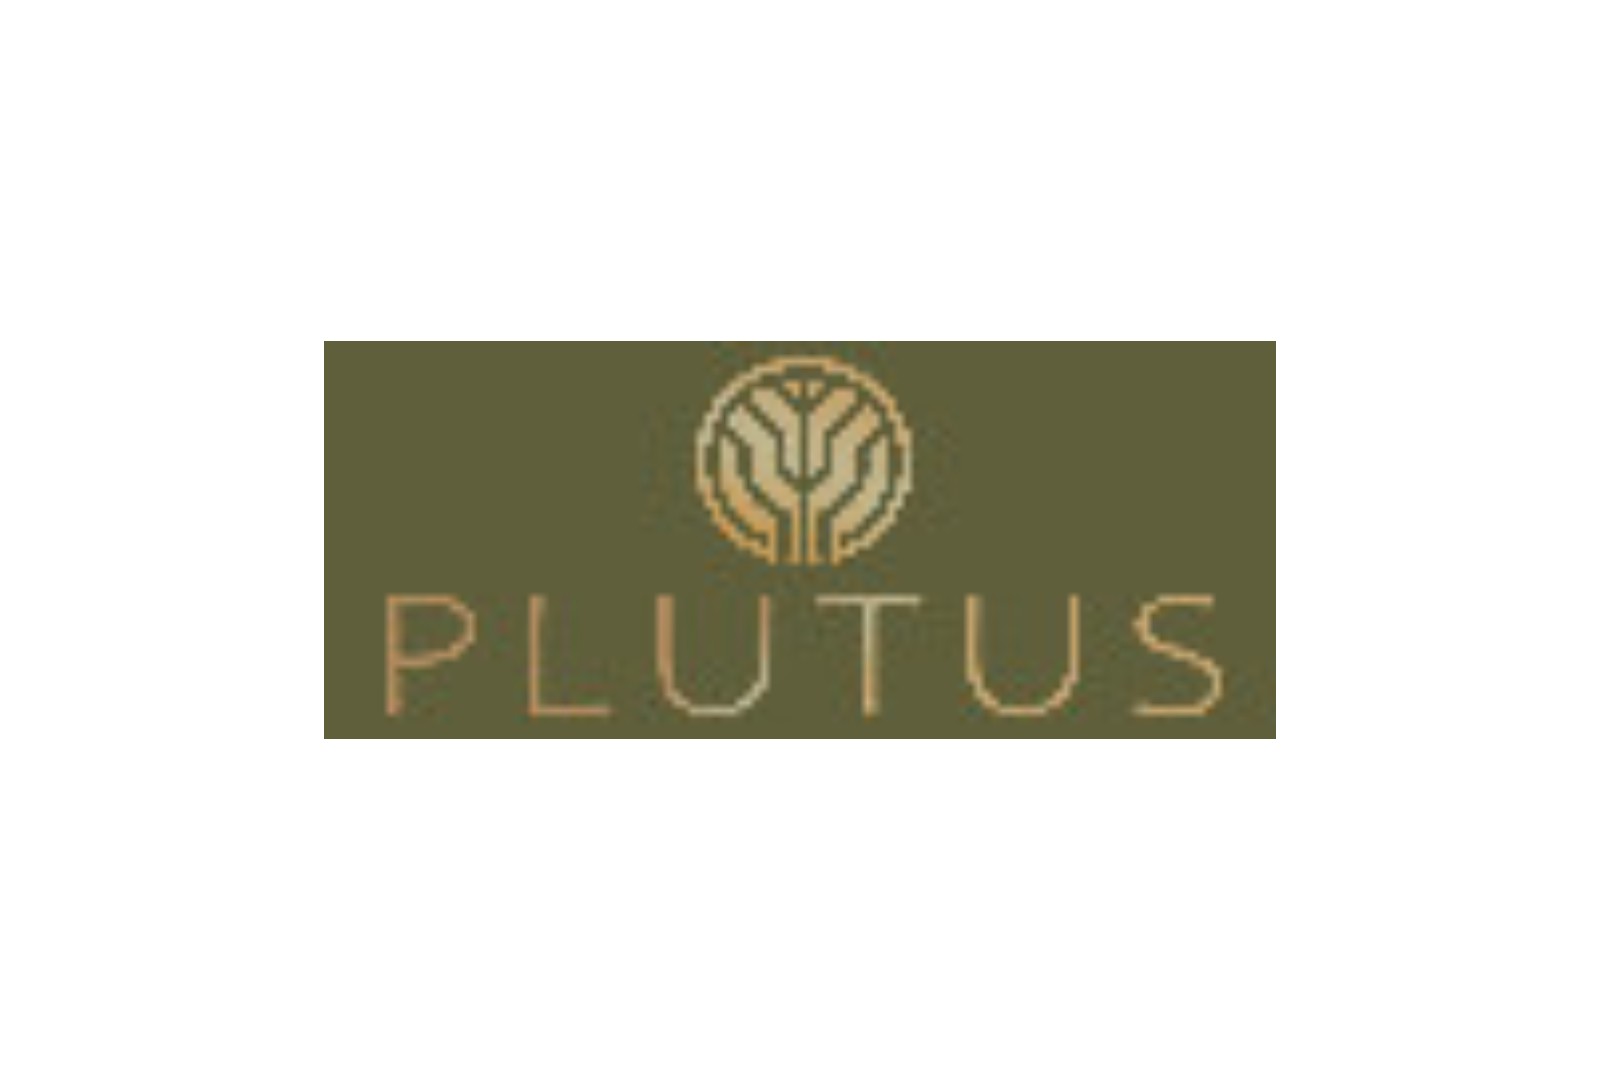 PLUTUS